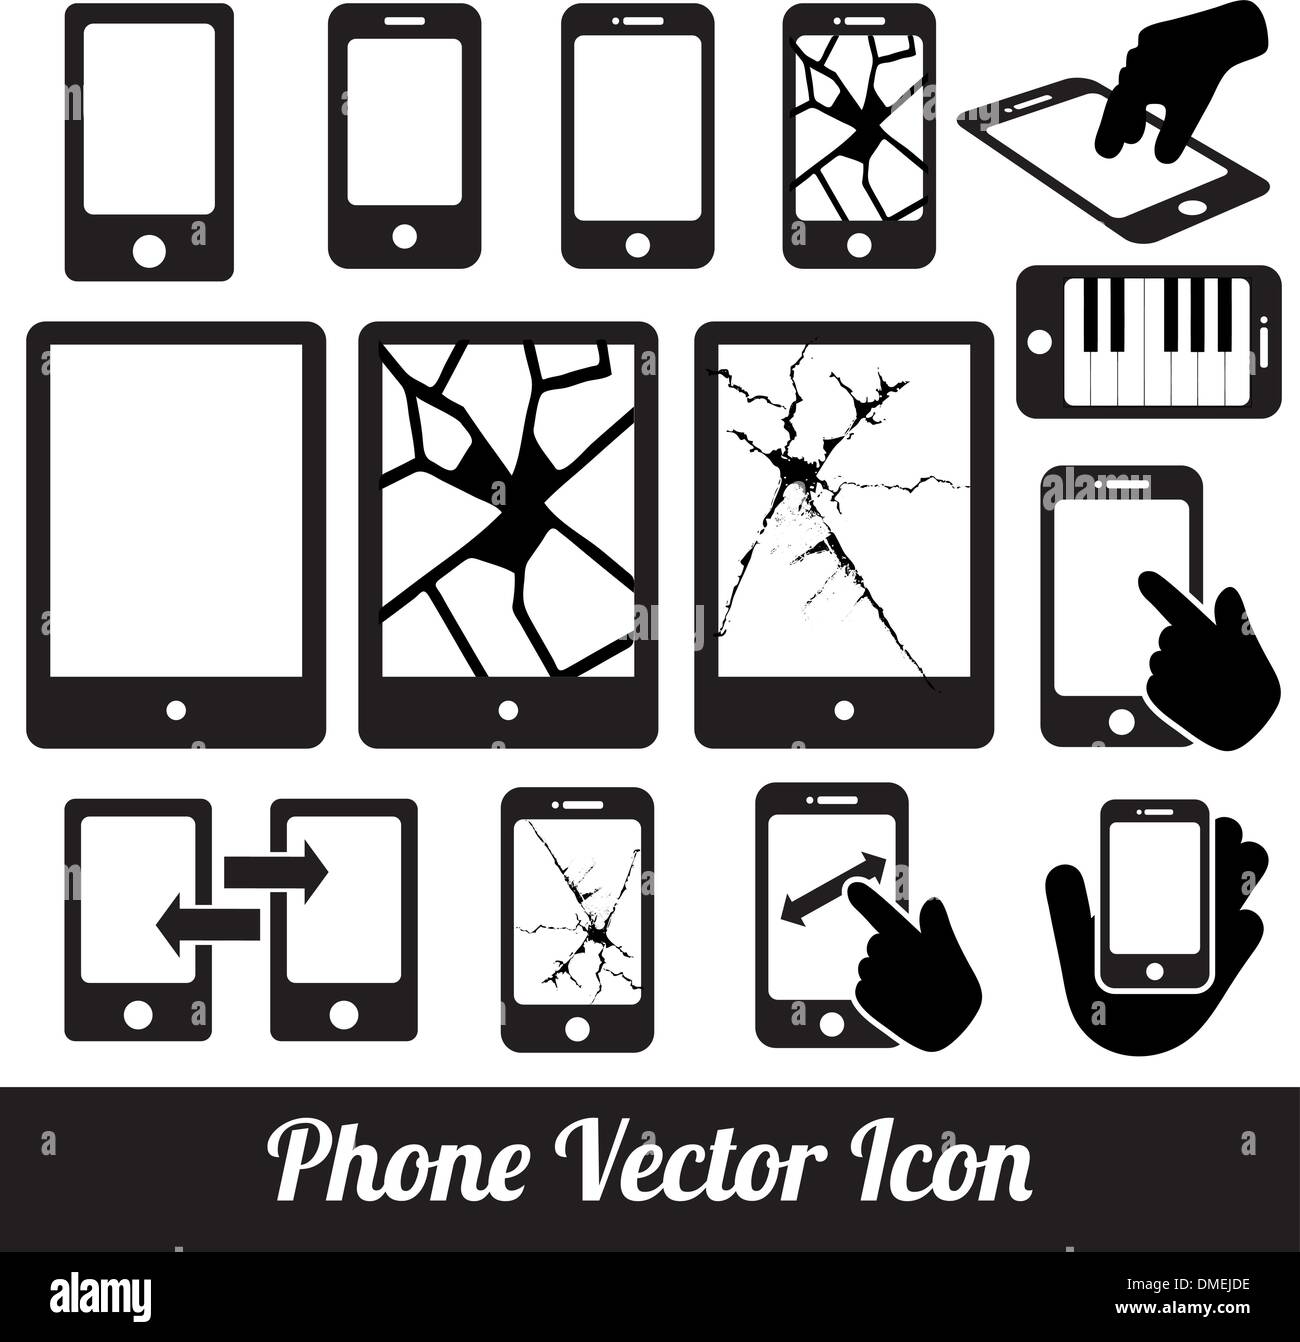 Teléfono, toque vector iconos de comunicación Ilustración del Vector